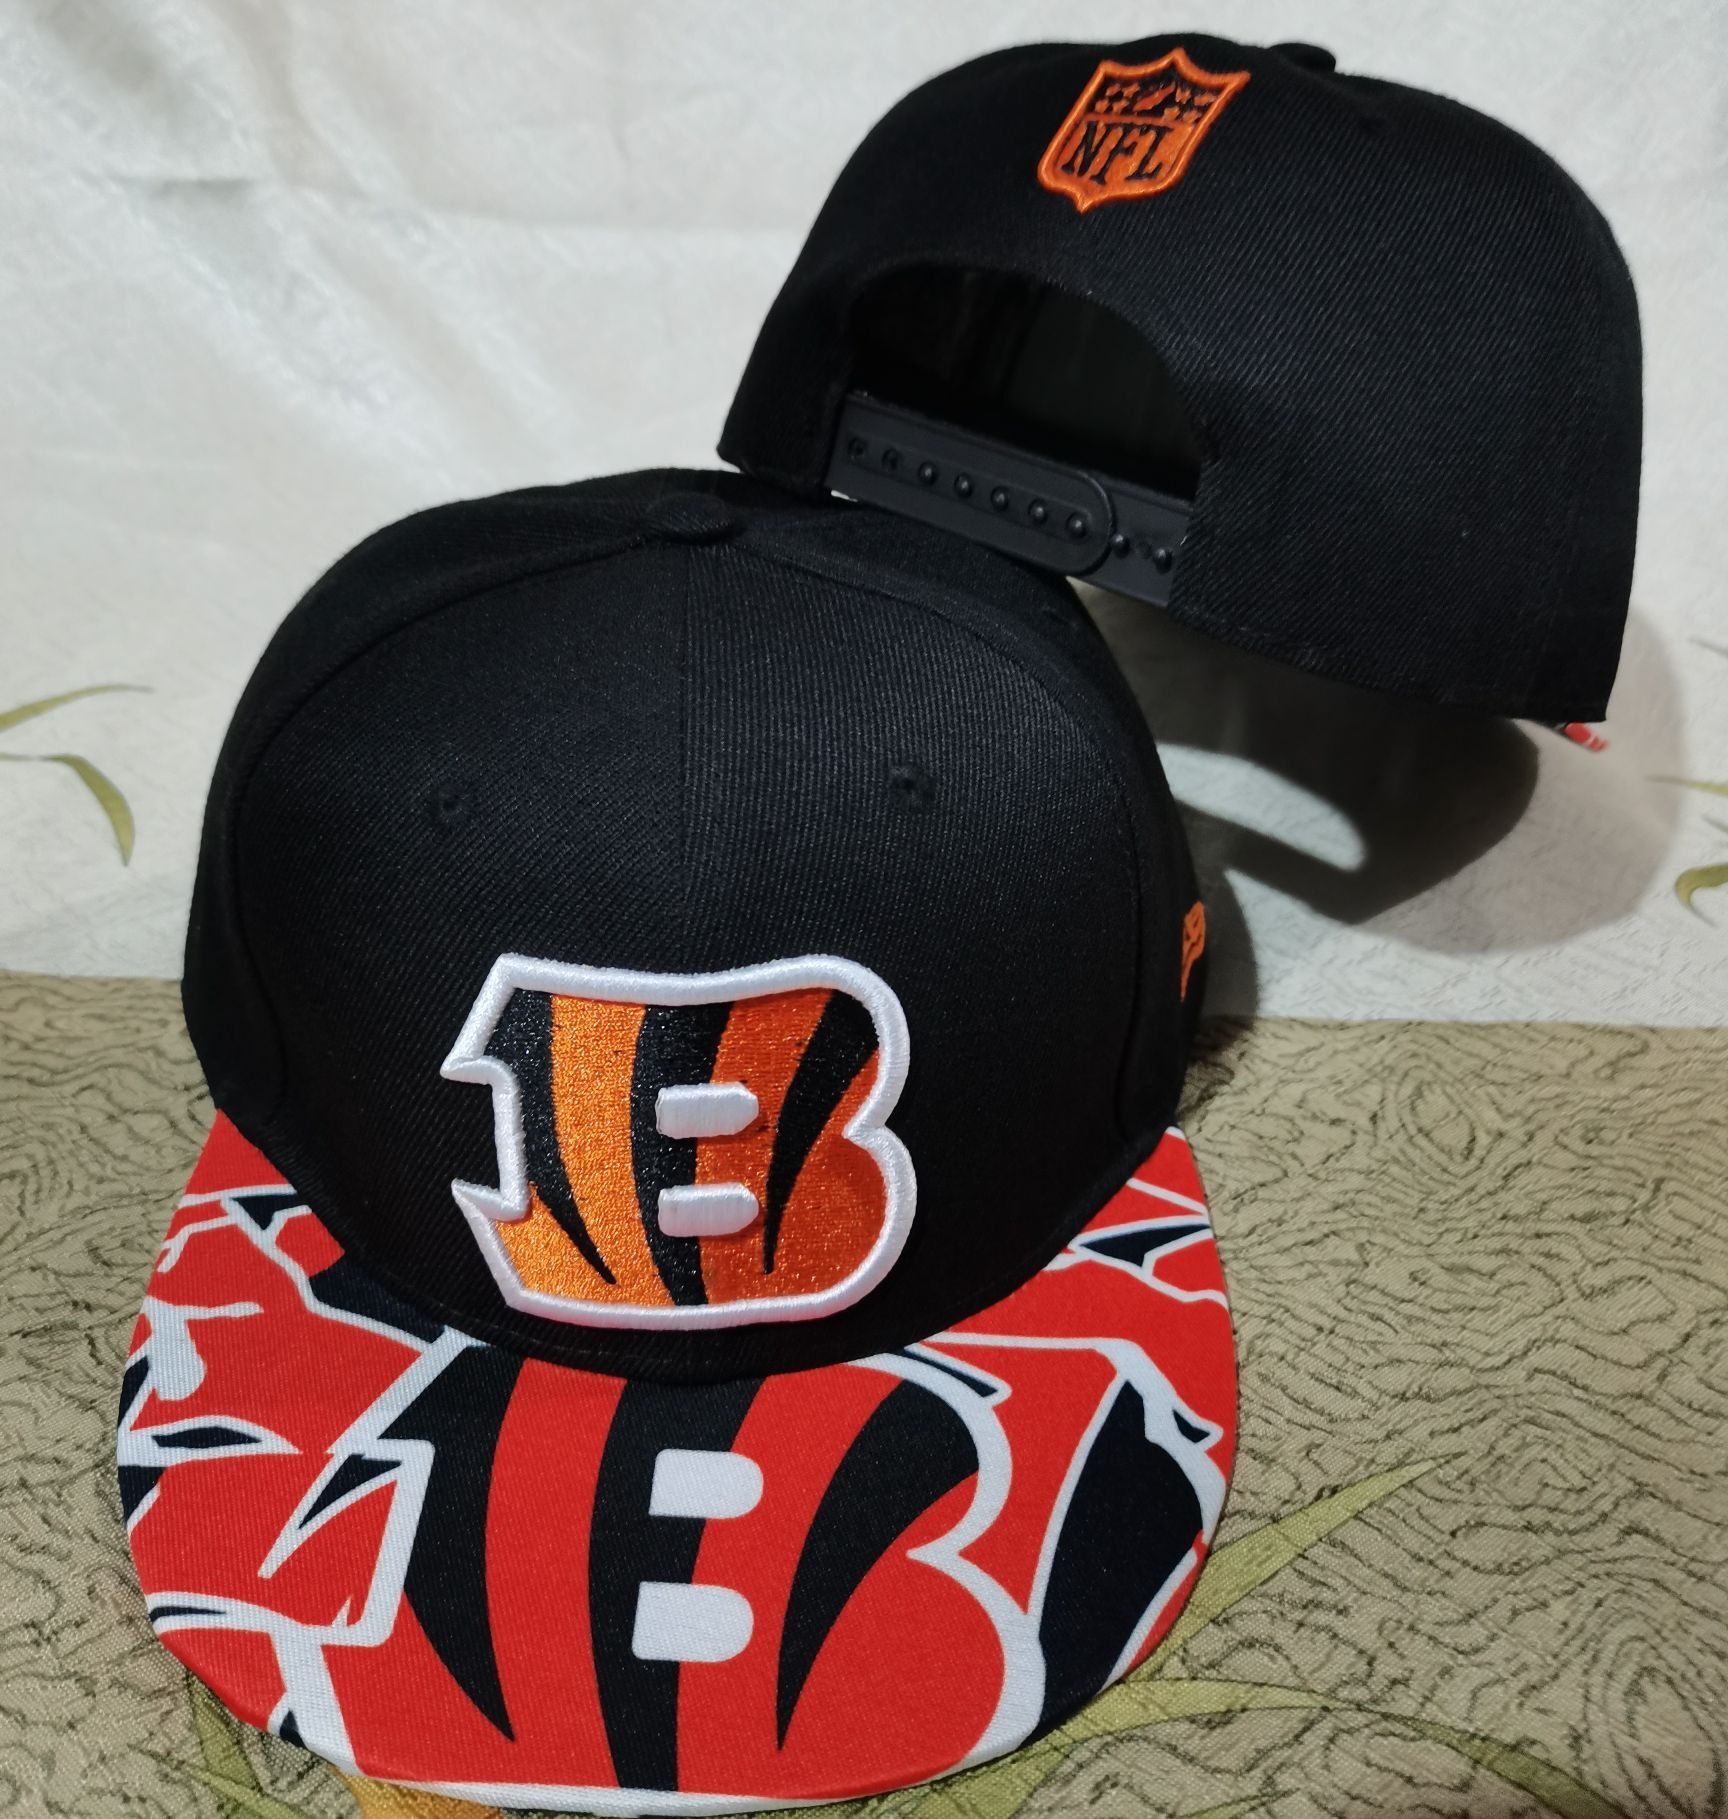 2022 NFL Cincinnati Bengals hat GSMY->nfl hats->Sports Caps